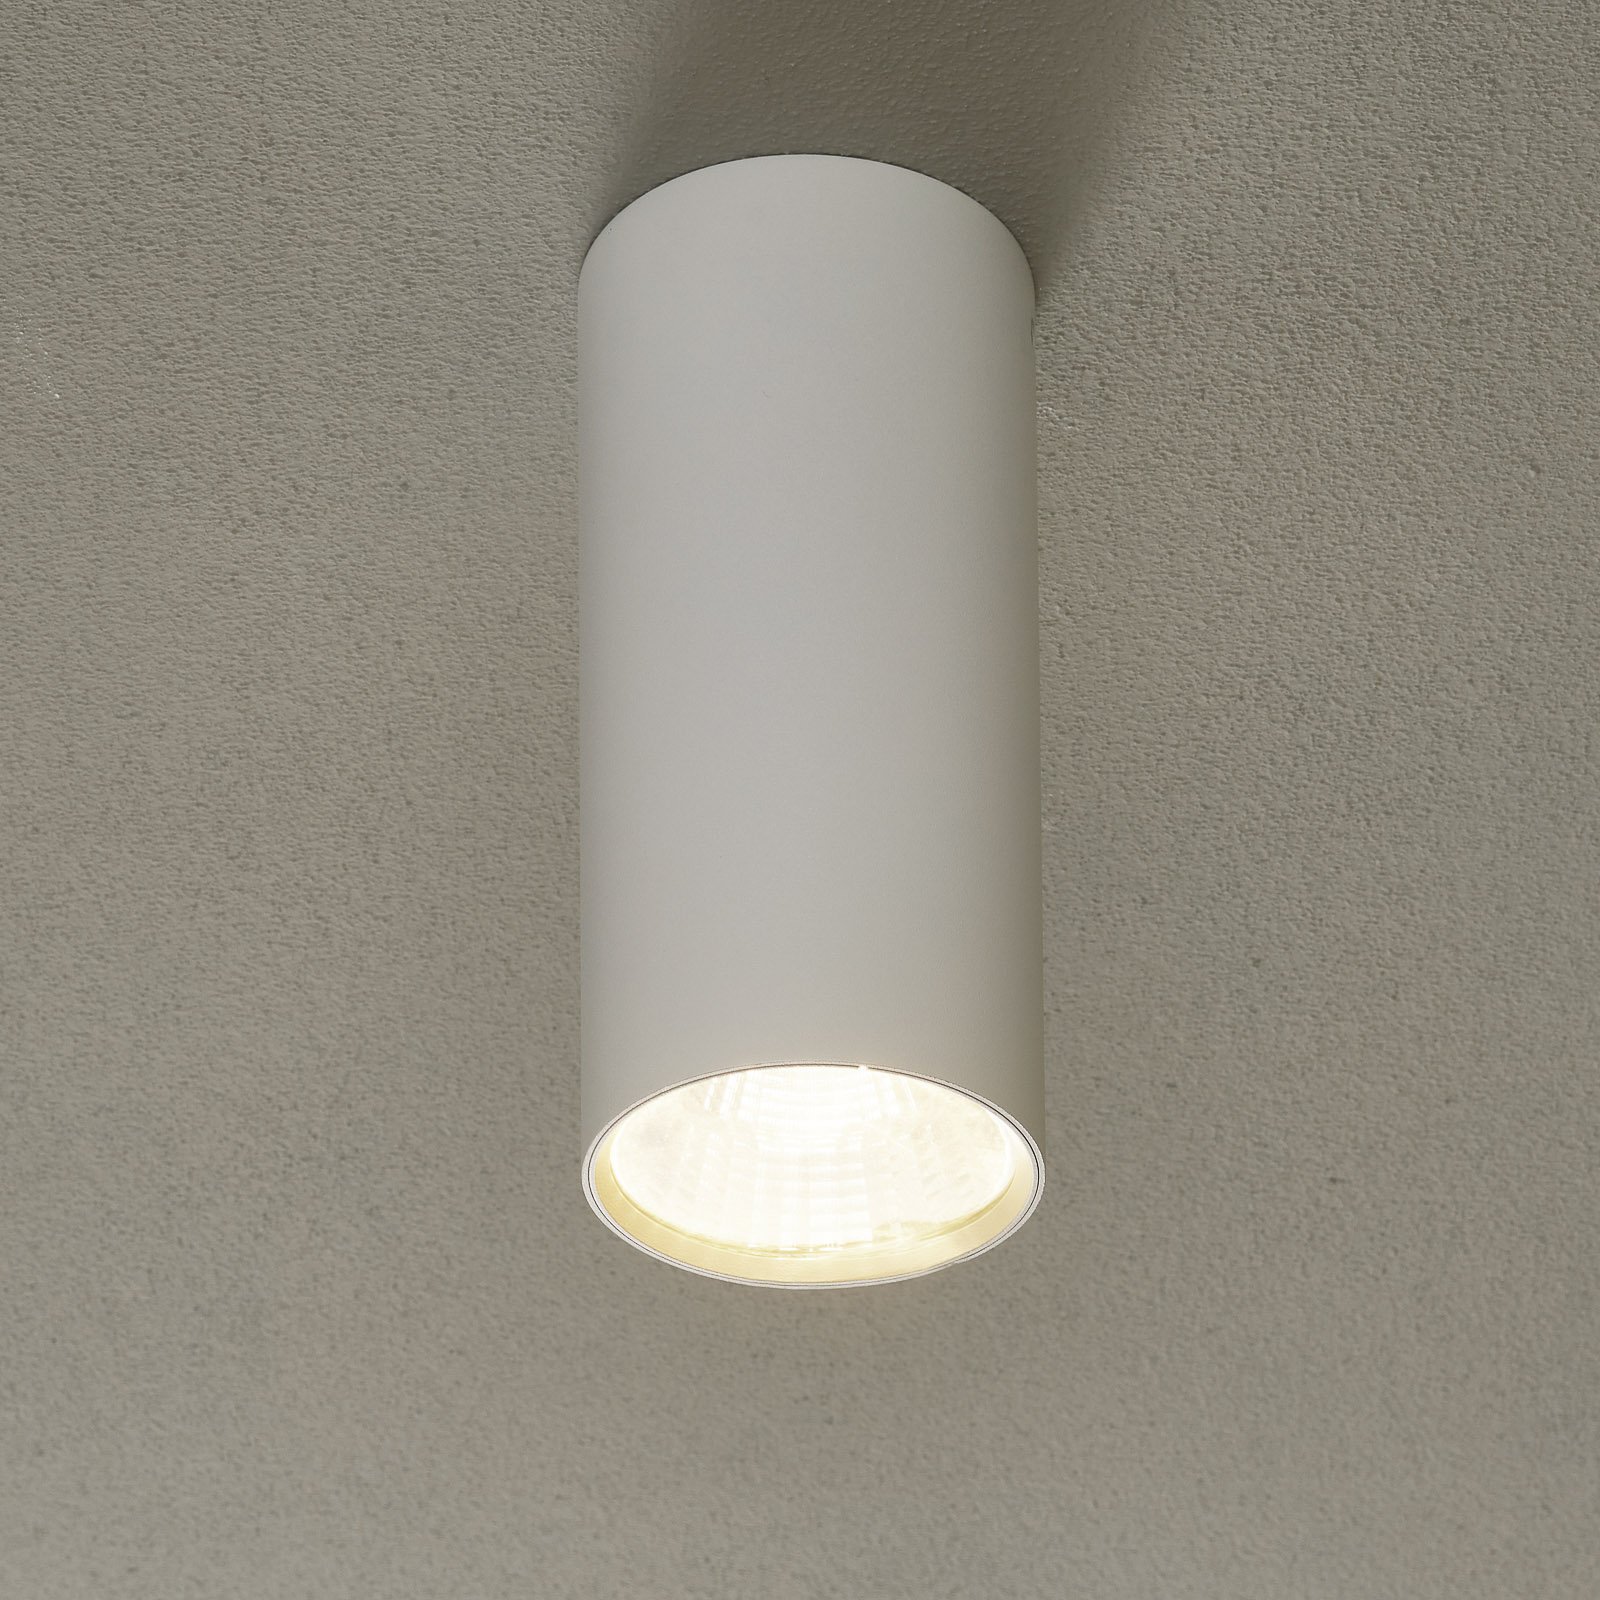 Lucande Takio LED downlight 2,700 K Ø 10 cm white